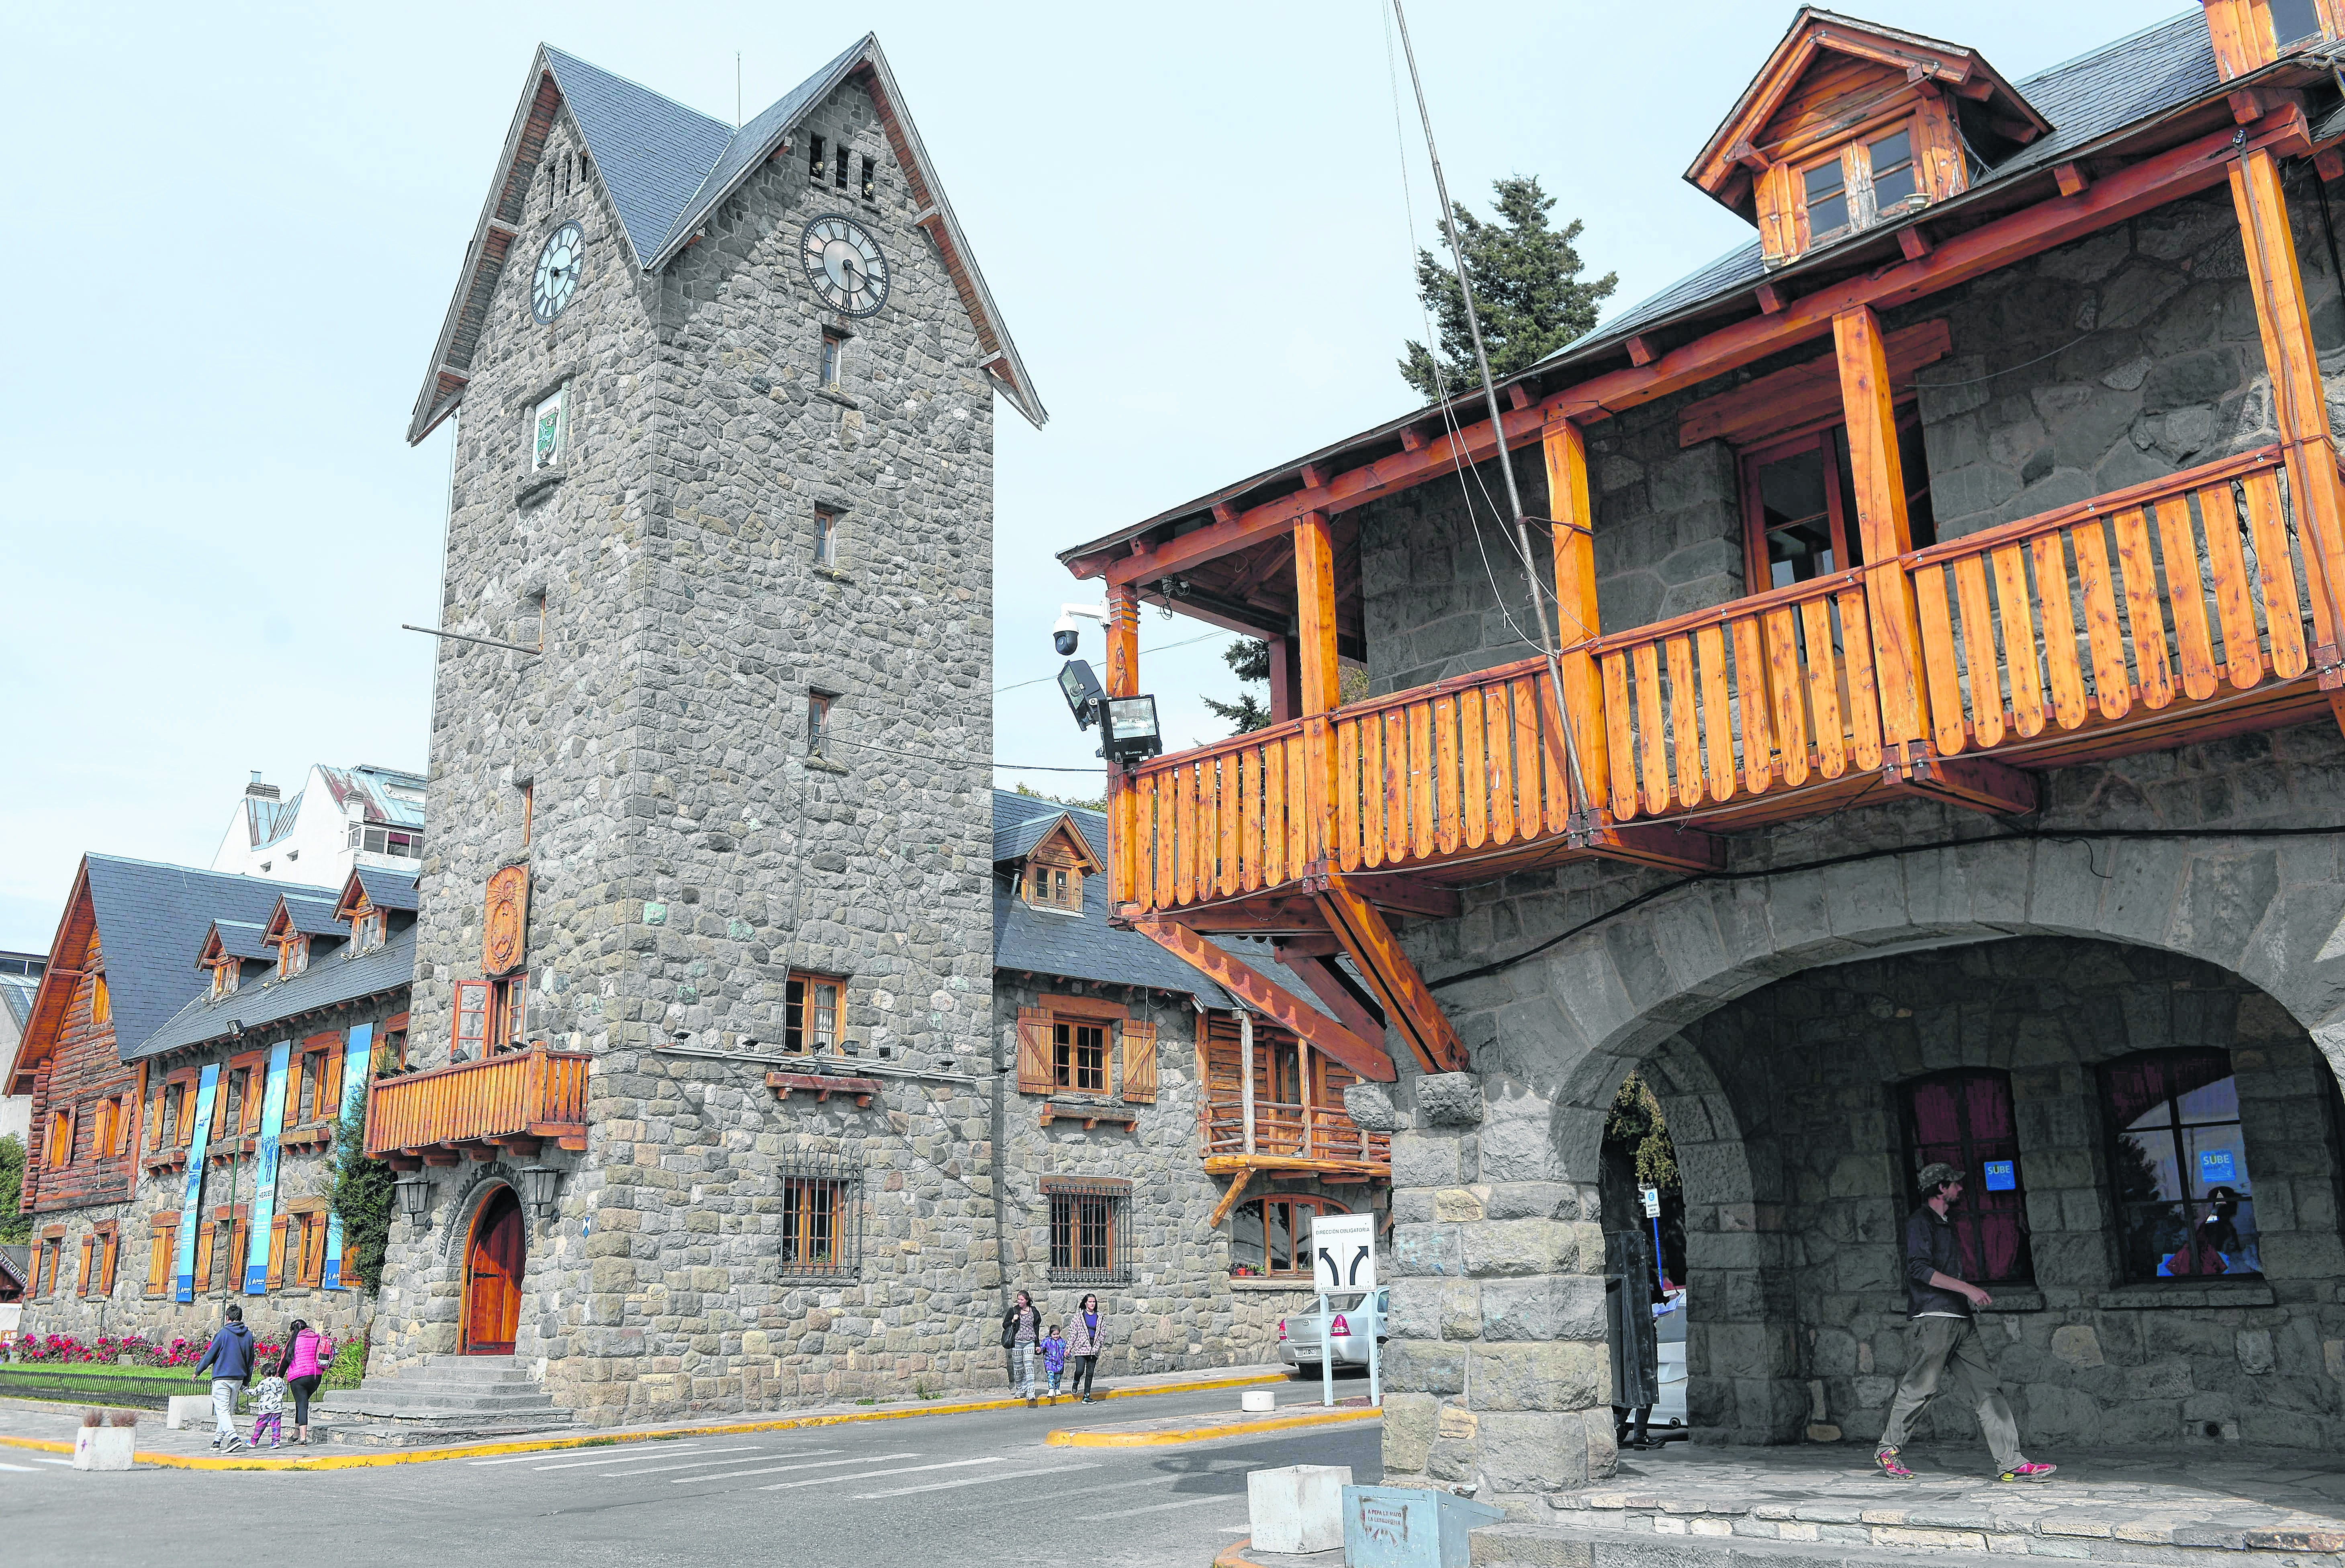 Las oficinas públicas de Bariloche estarán cerradas el 24 de diciembre, por asueto administrativo. Archivo